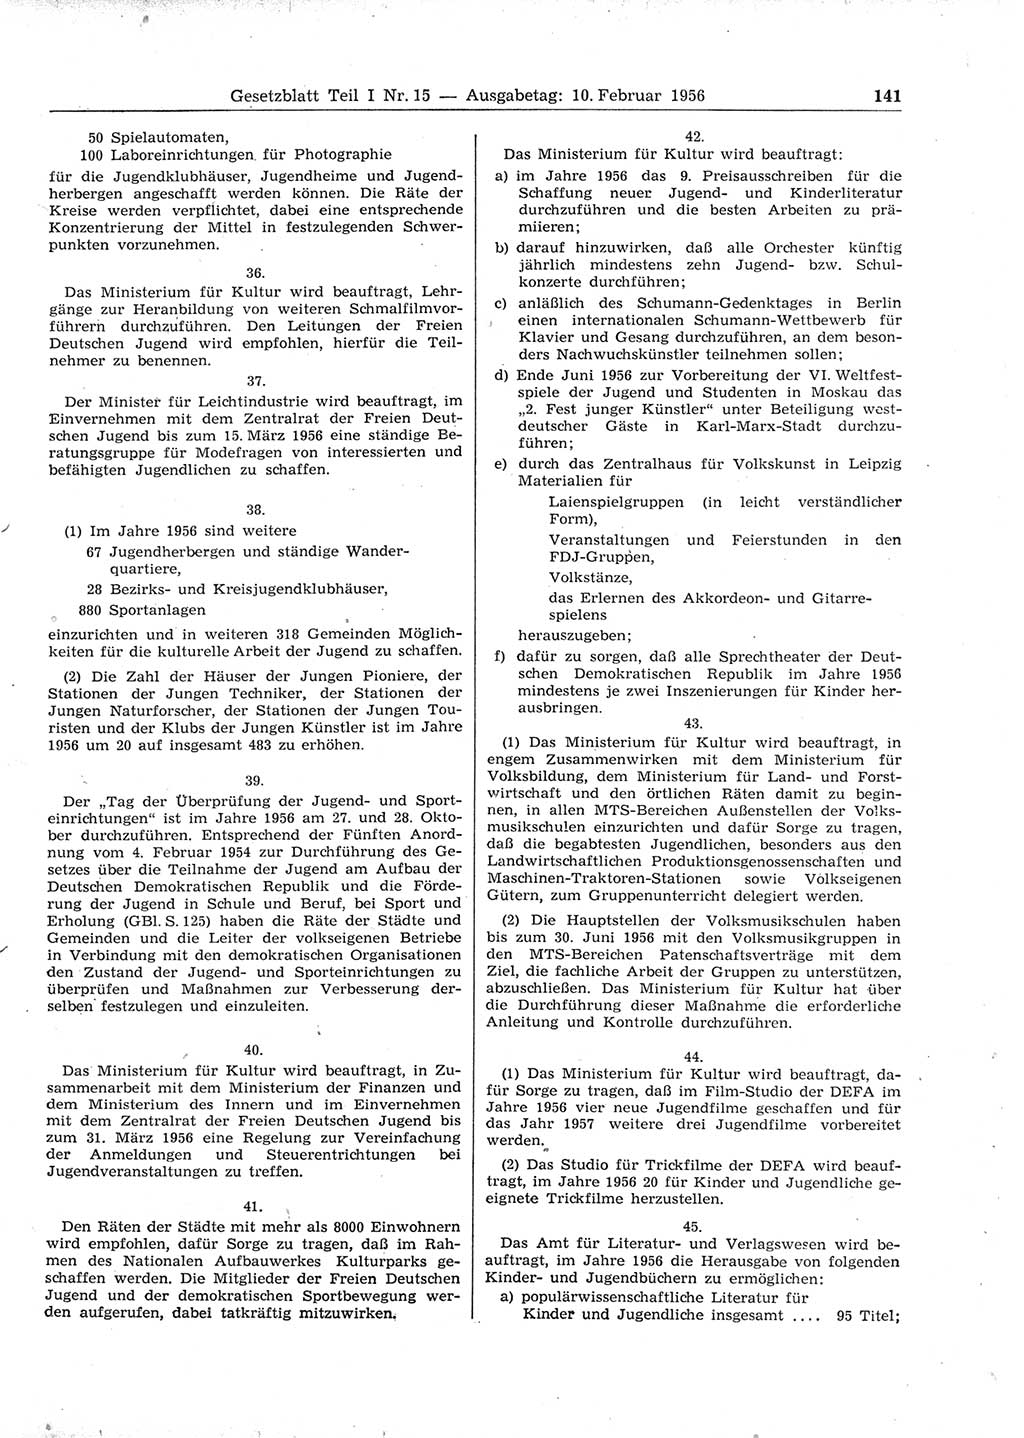 Gesetzblatt (GBl.) der Deutschen Demokratischen Republik (DDR) Teil Ⅰ 1956, Seite 141 (GBl. DDR Ⅰ 1956, S. 141)